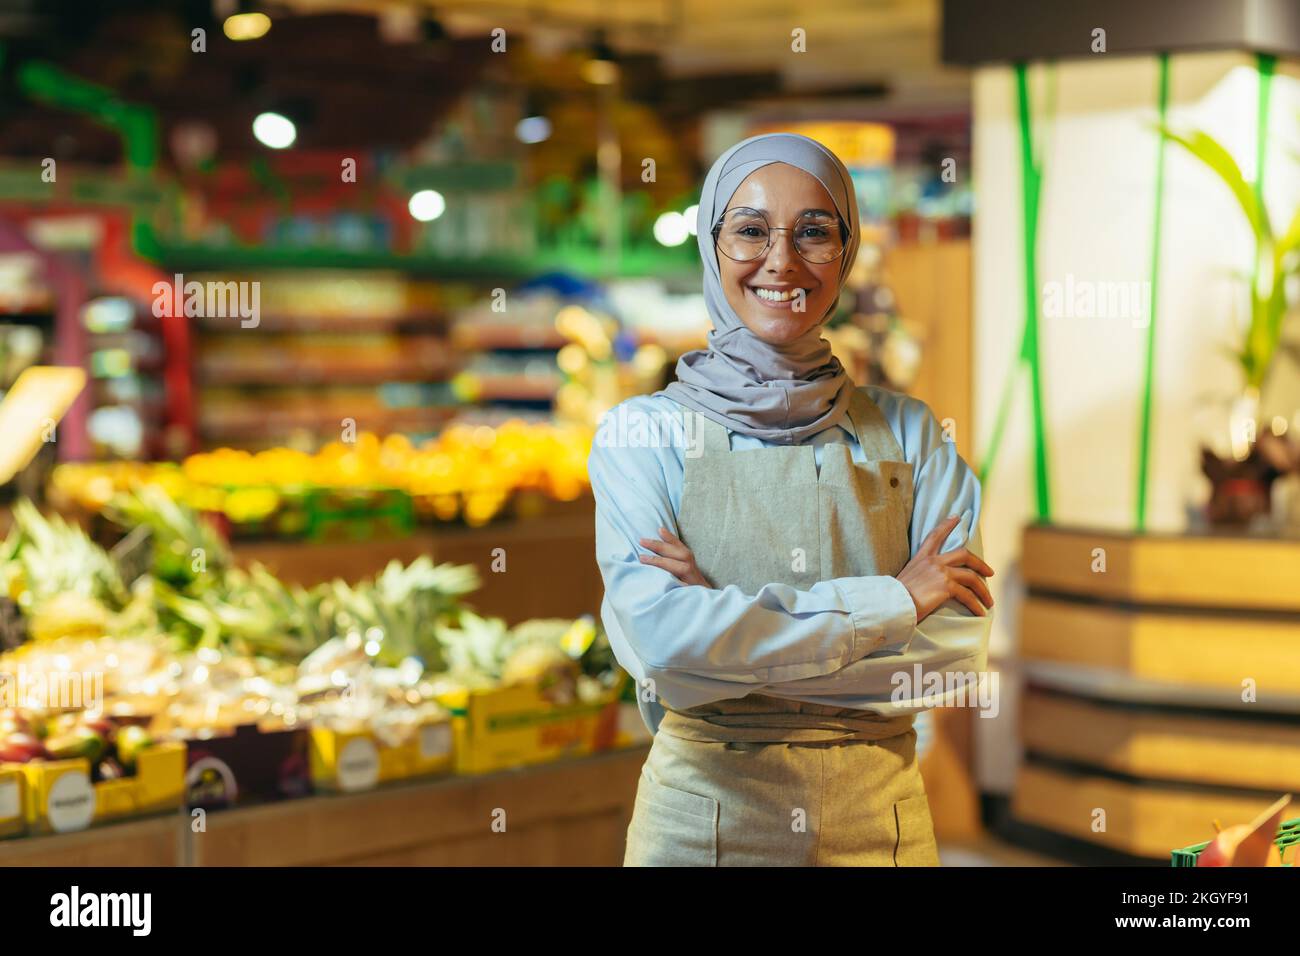 Portrait d'une femme dans un hijab en tant que vendeur dans un supermarché, une vendeuse aux bras croisés sourires et regarde la caméra, un tablier vend des pommes et des fruits, une femme musulmane est satisfaite dans les verres. Banque D'Images